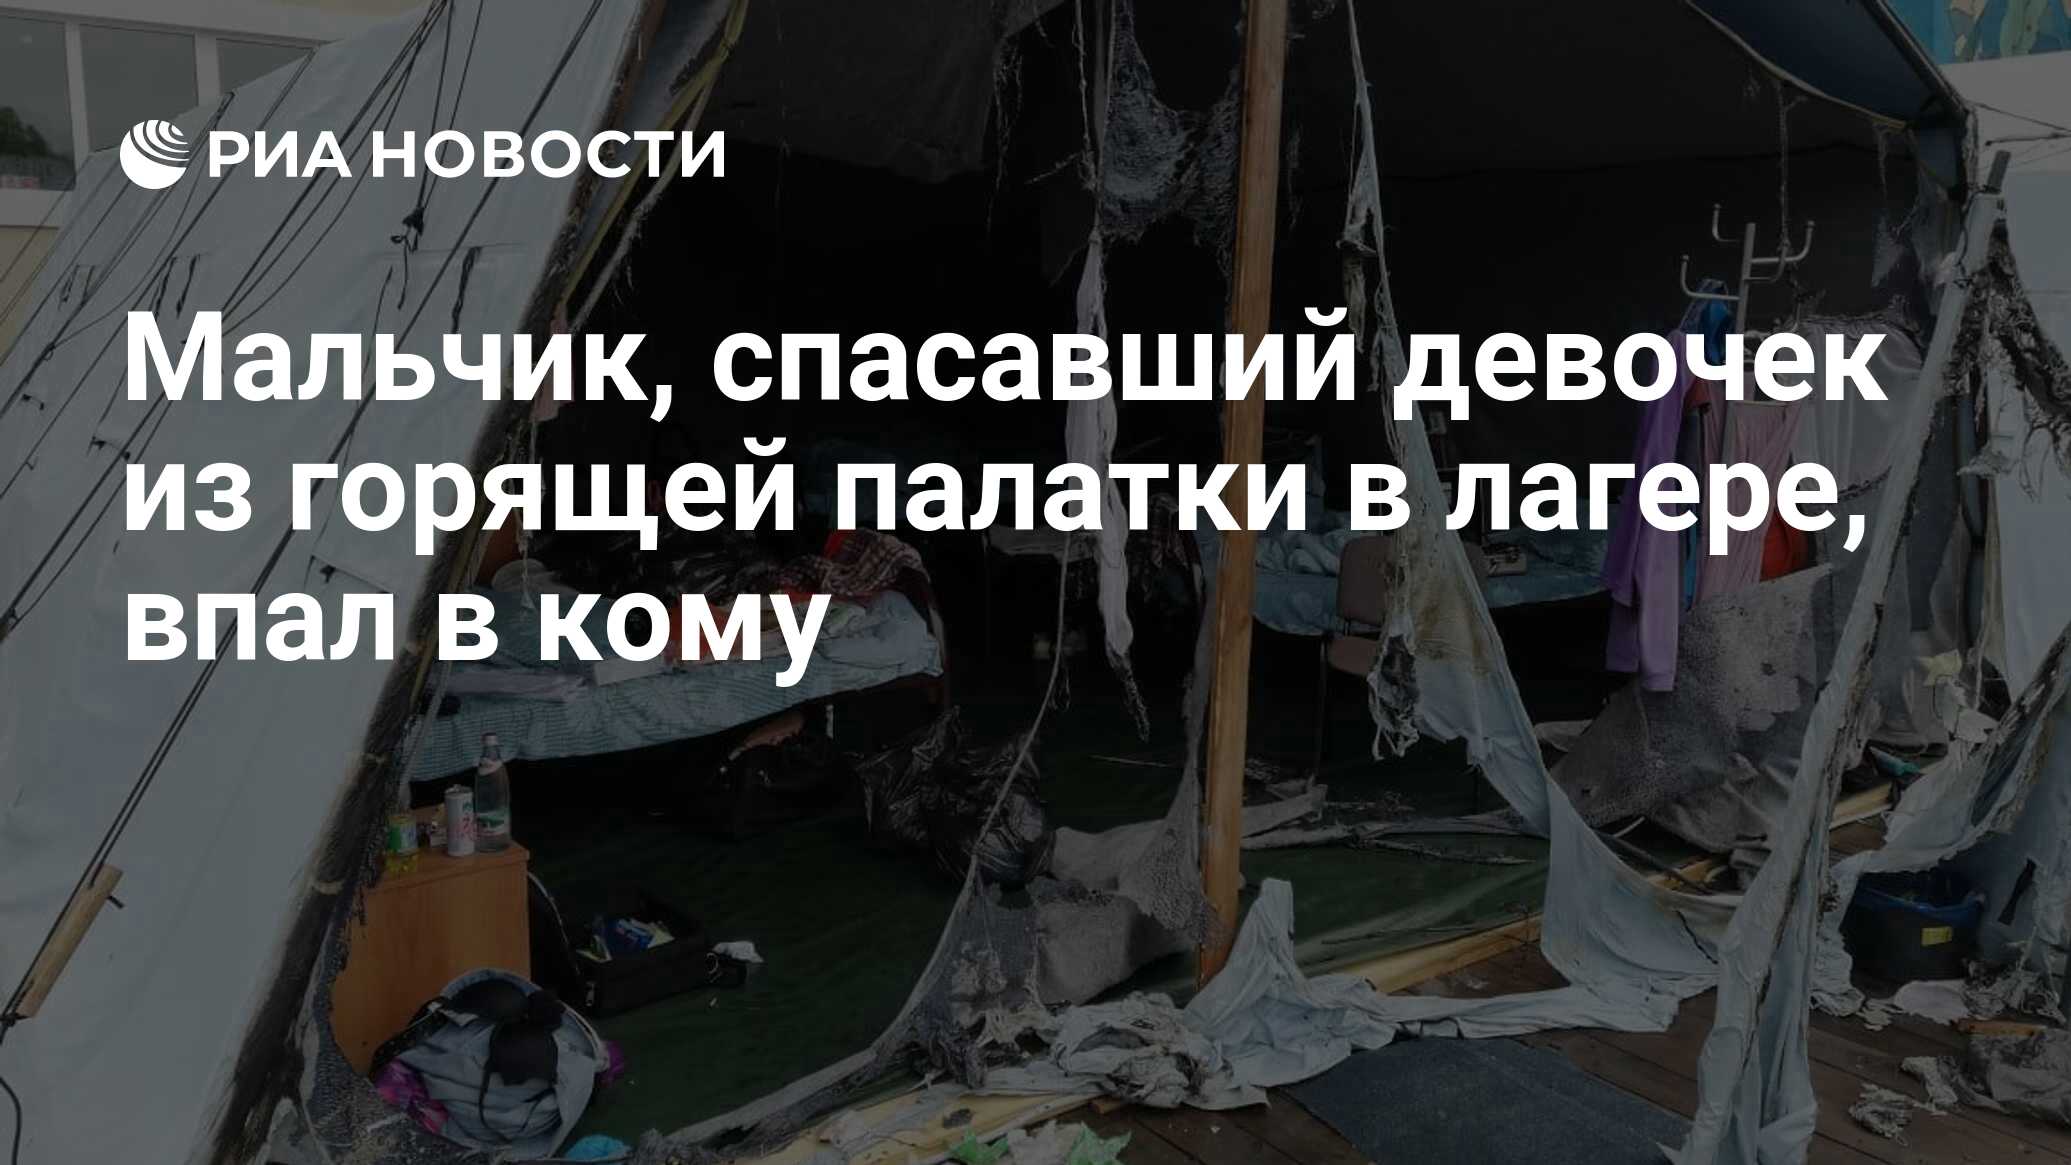 Мальчик, спасавший девочек из горящей палатки в лагере, впал в кому - РИА  Новости, 23.07.2019